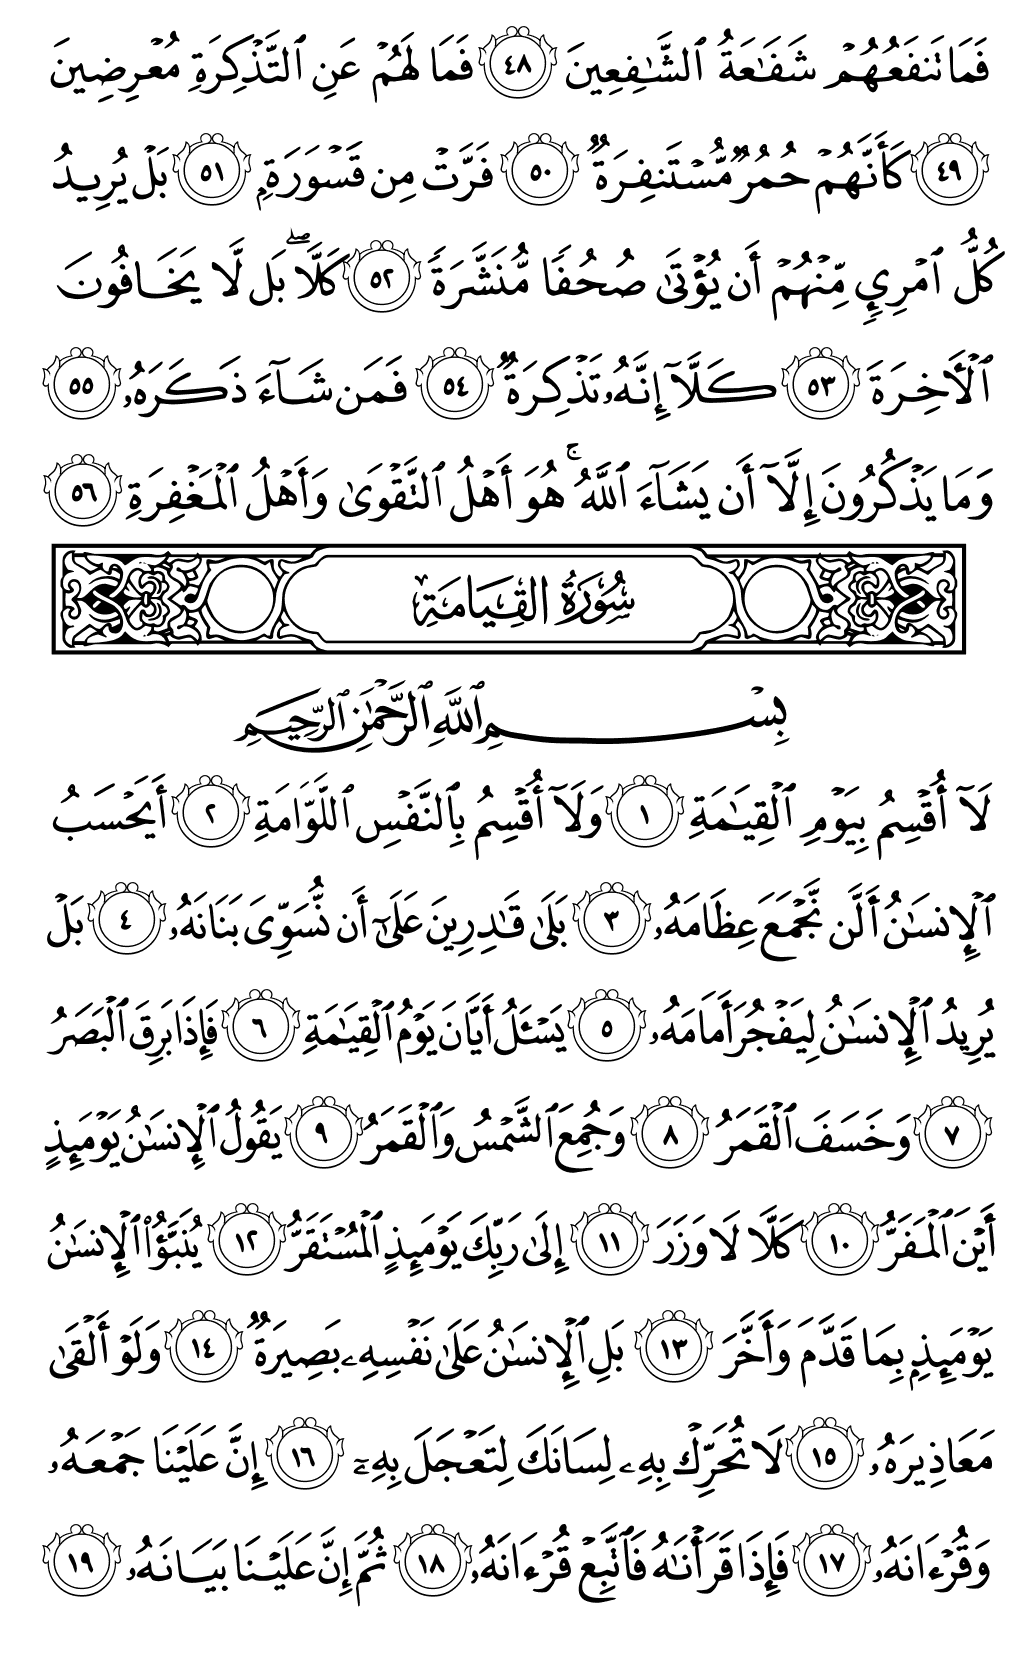 الصفحة رقم 577 من القرآن الكريم